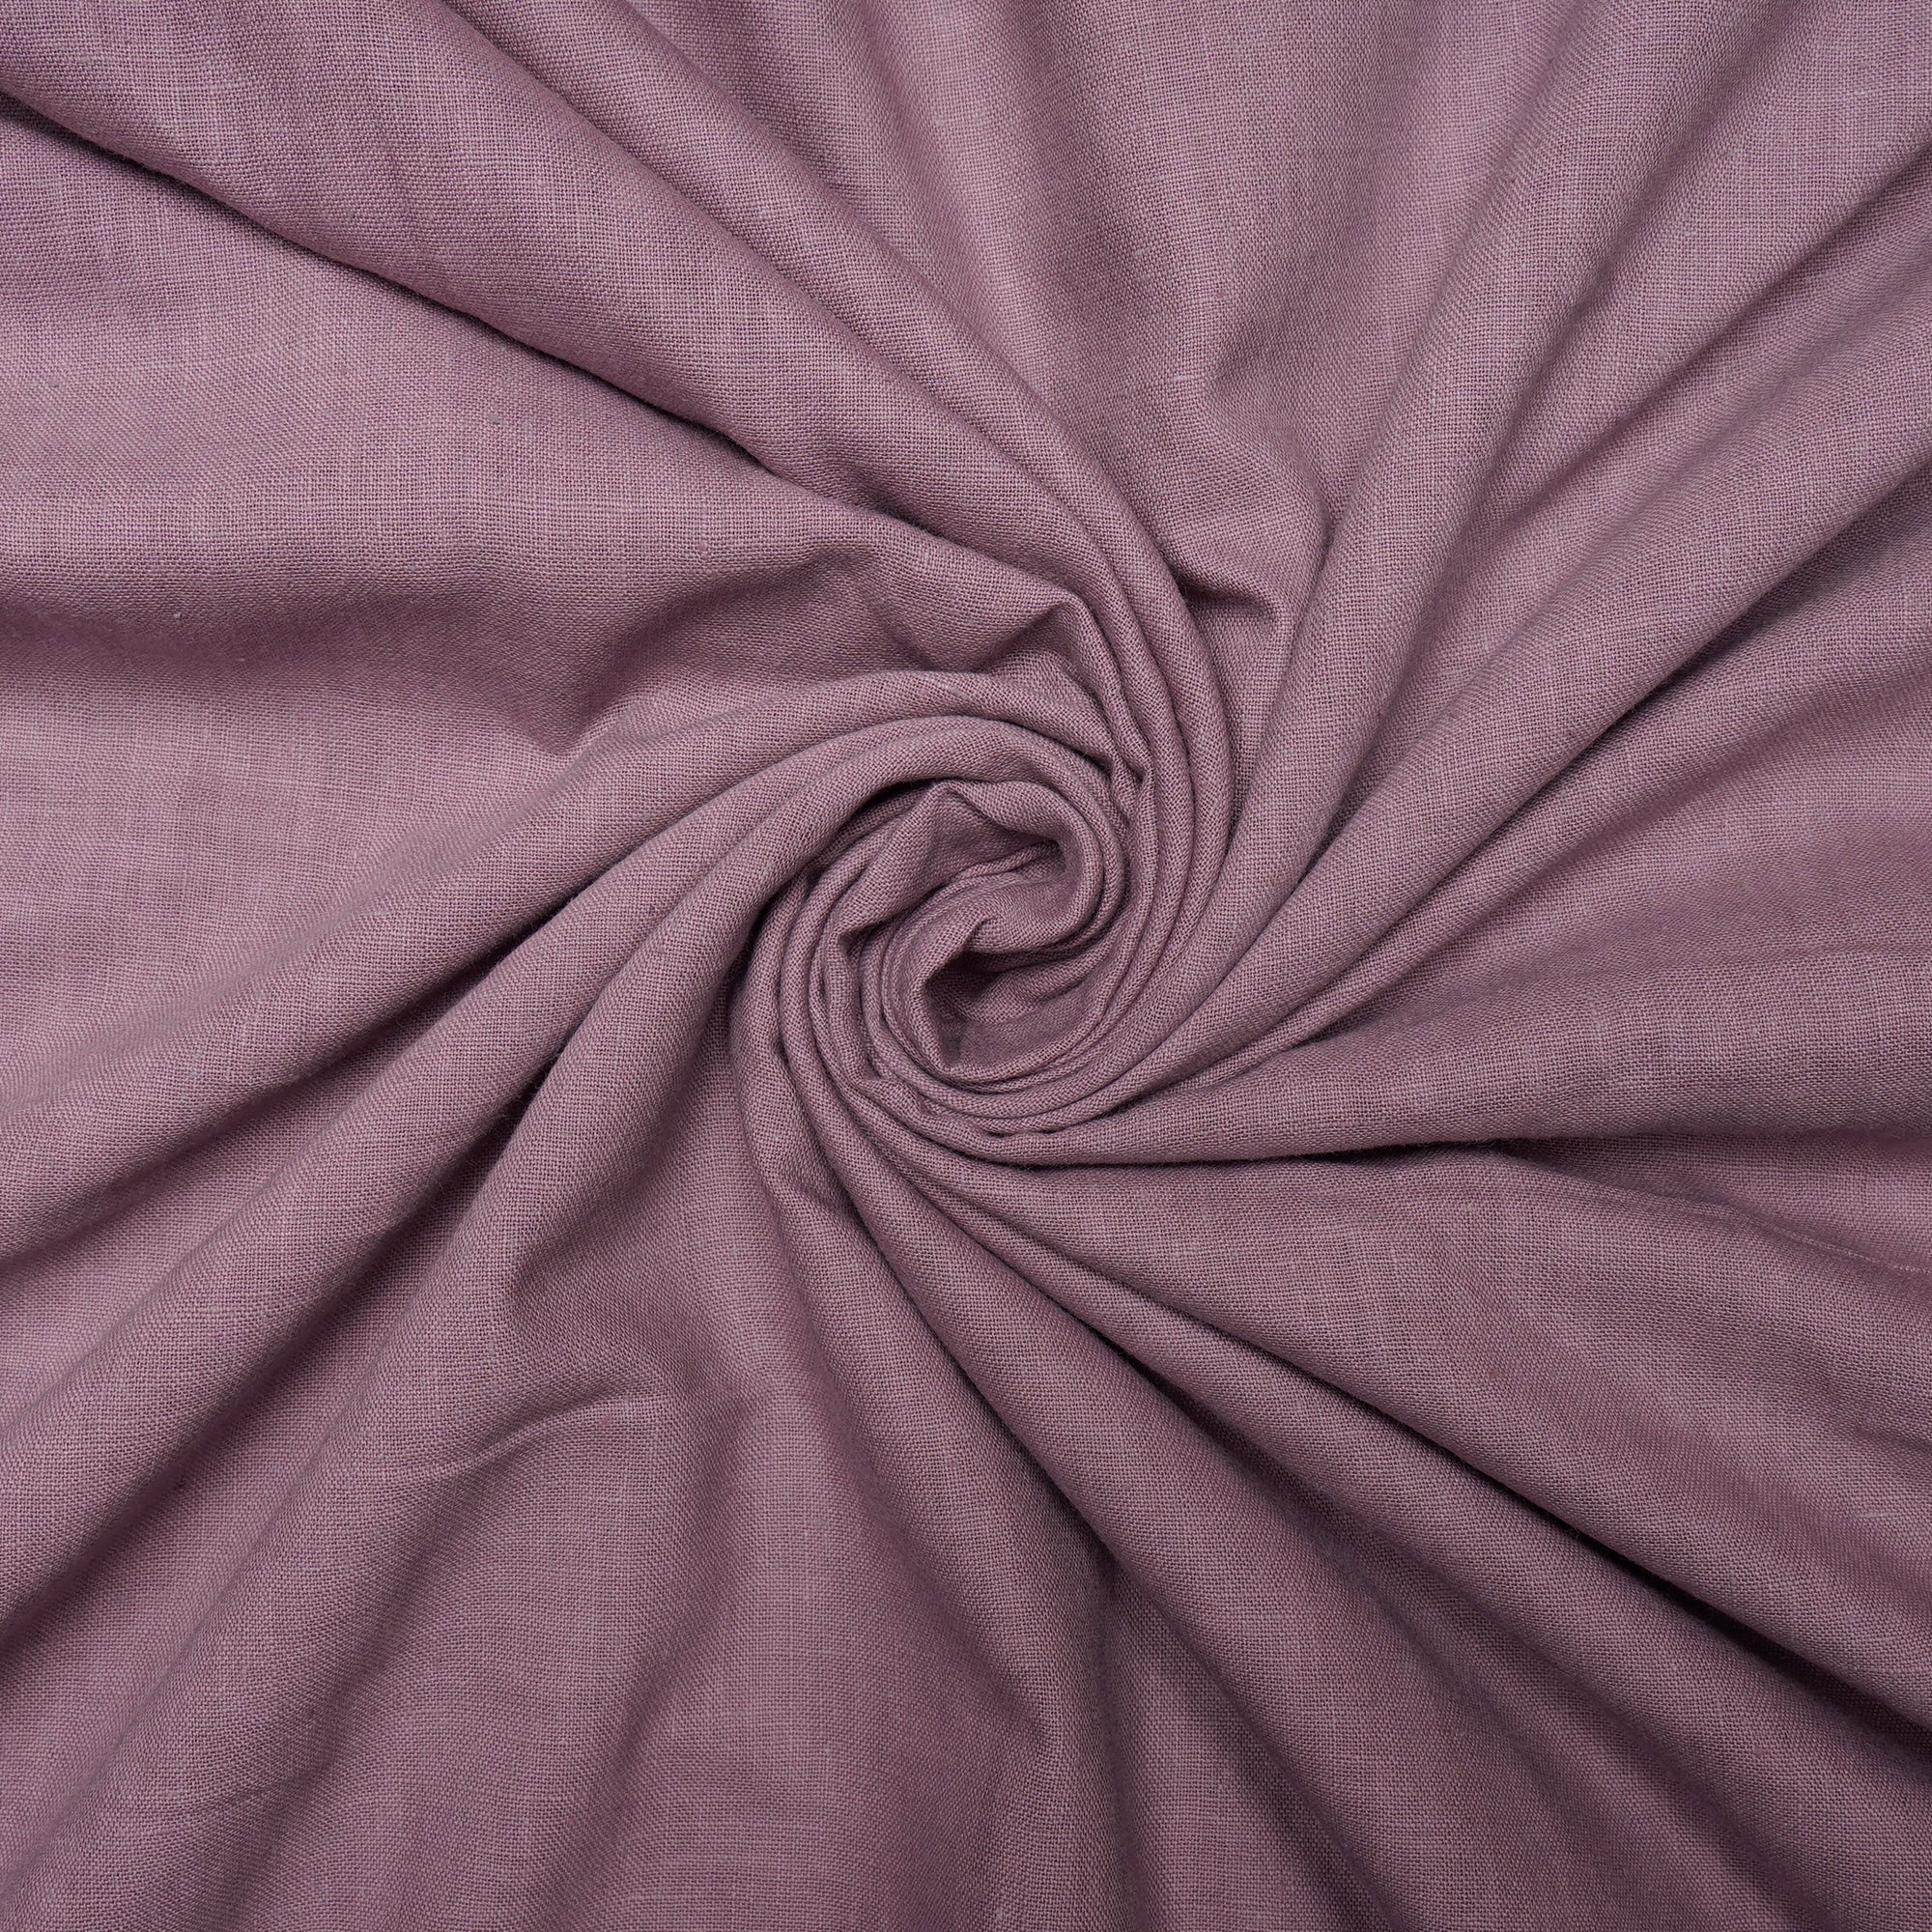 Dusty Lavender Color Handwoven Handspun Cotton Fabric